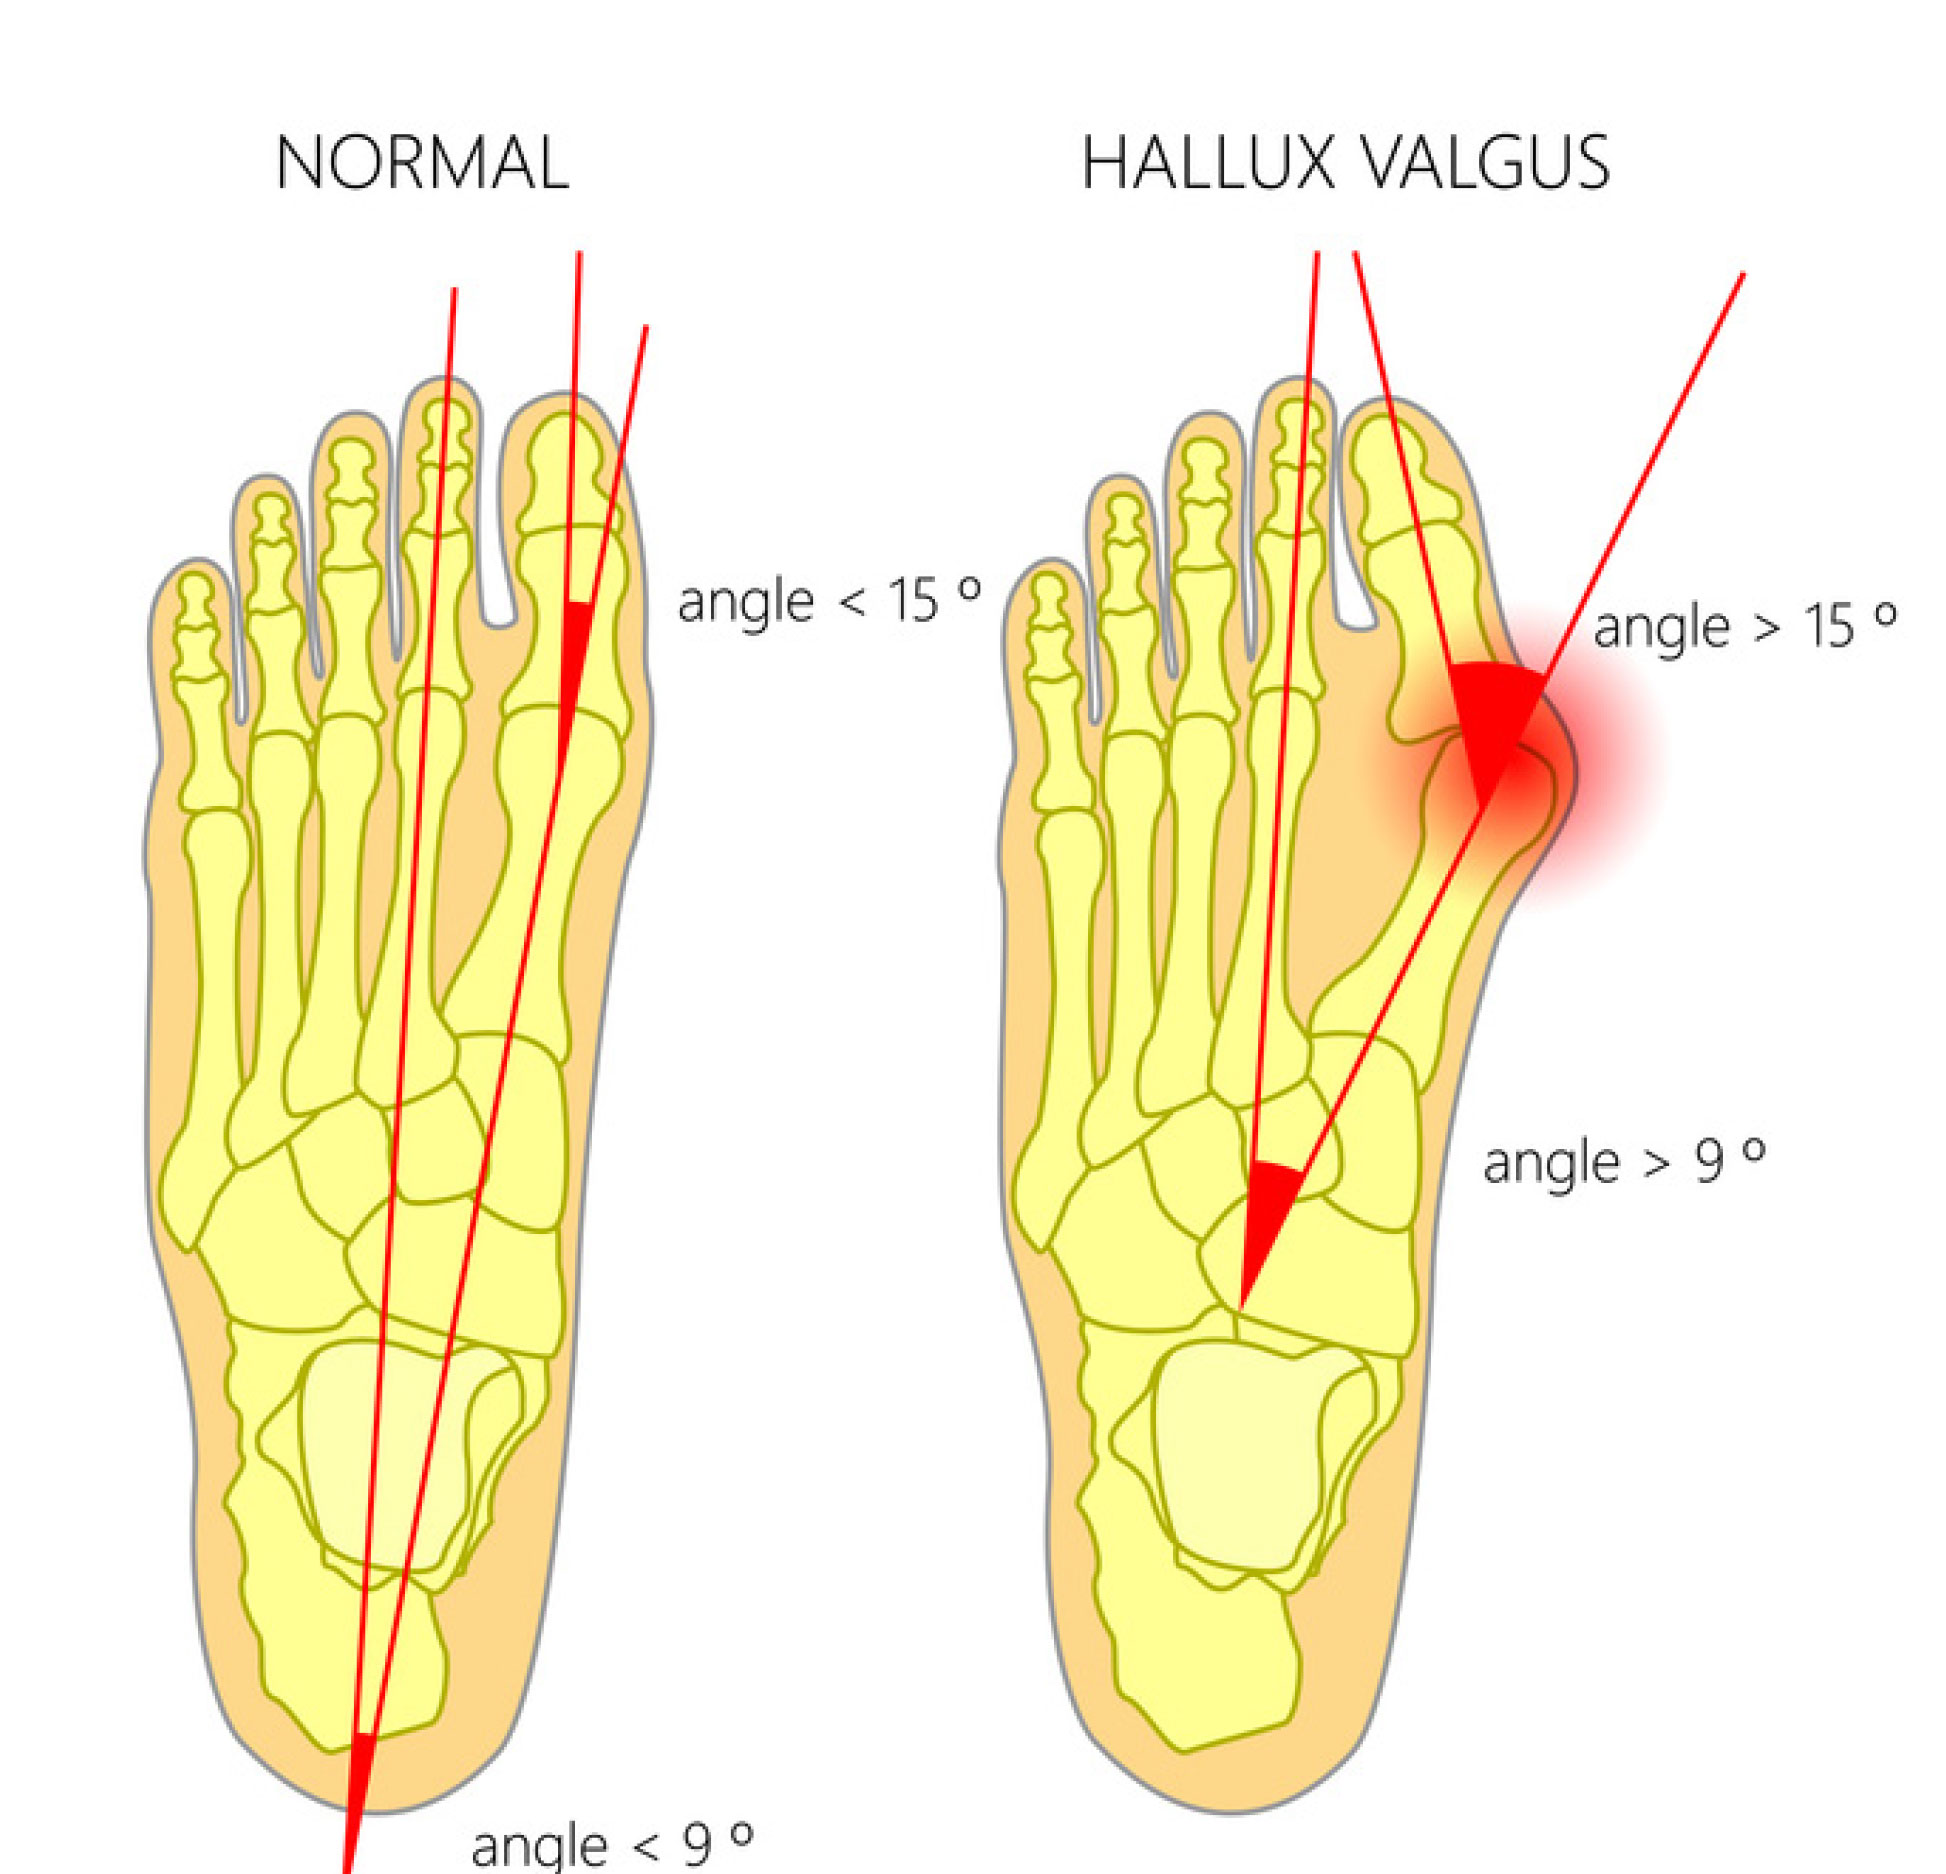 Diagram showing normal foot vs foot with hallux valgus